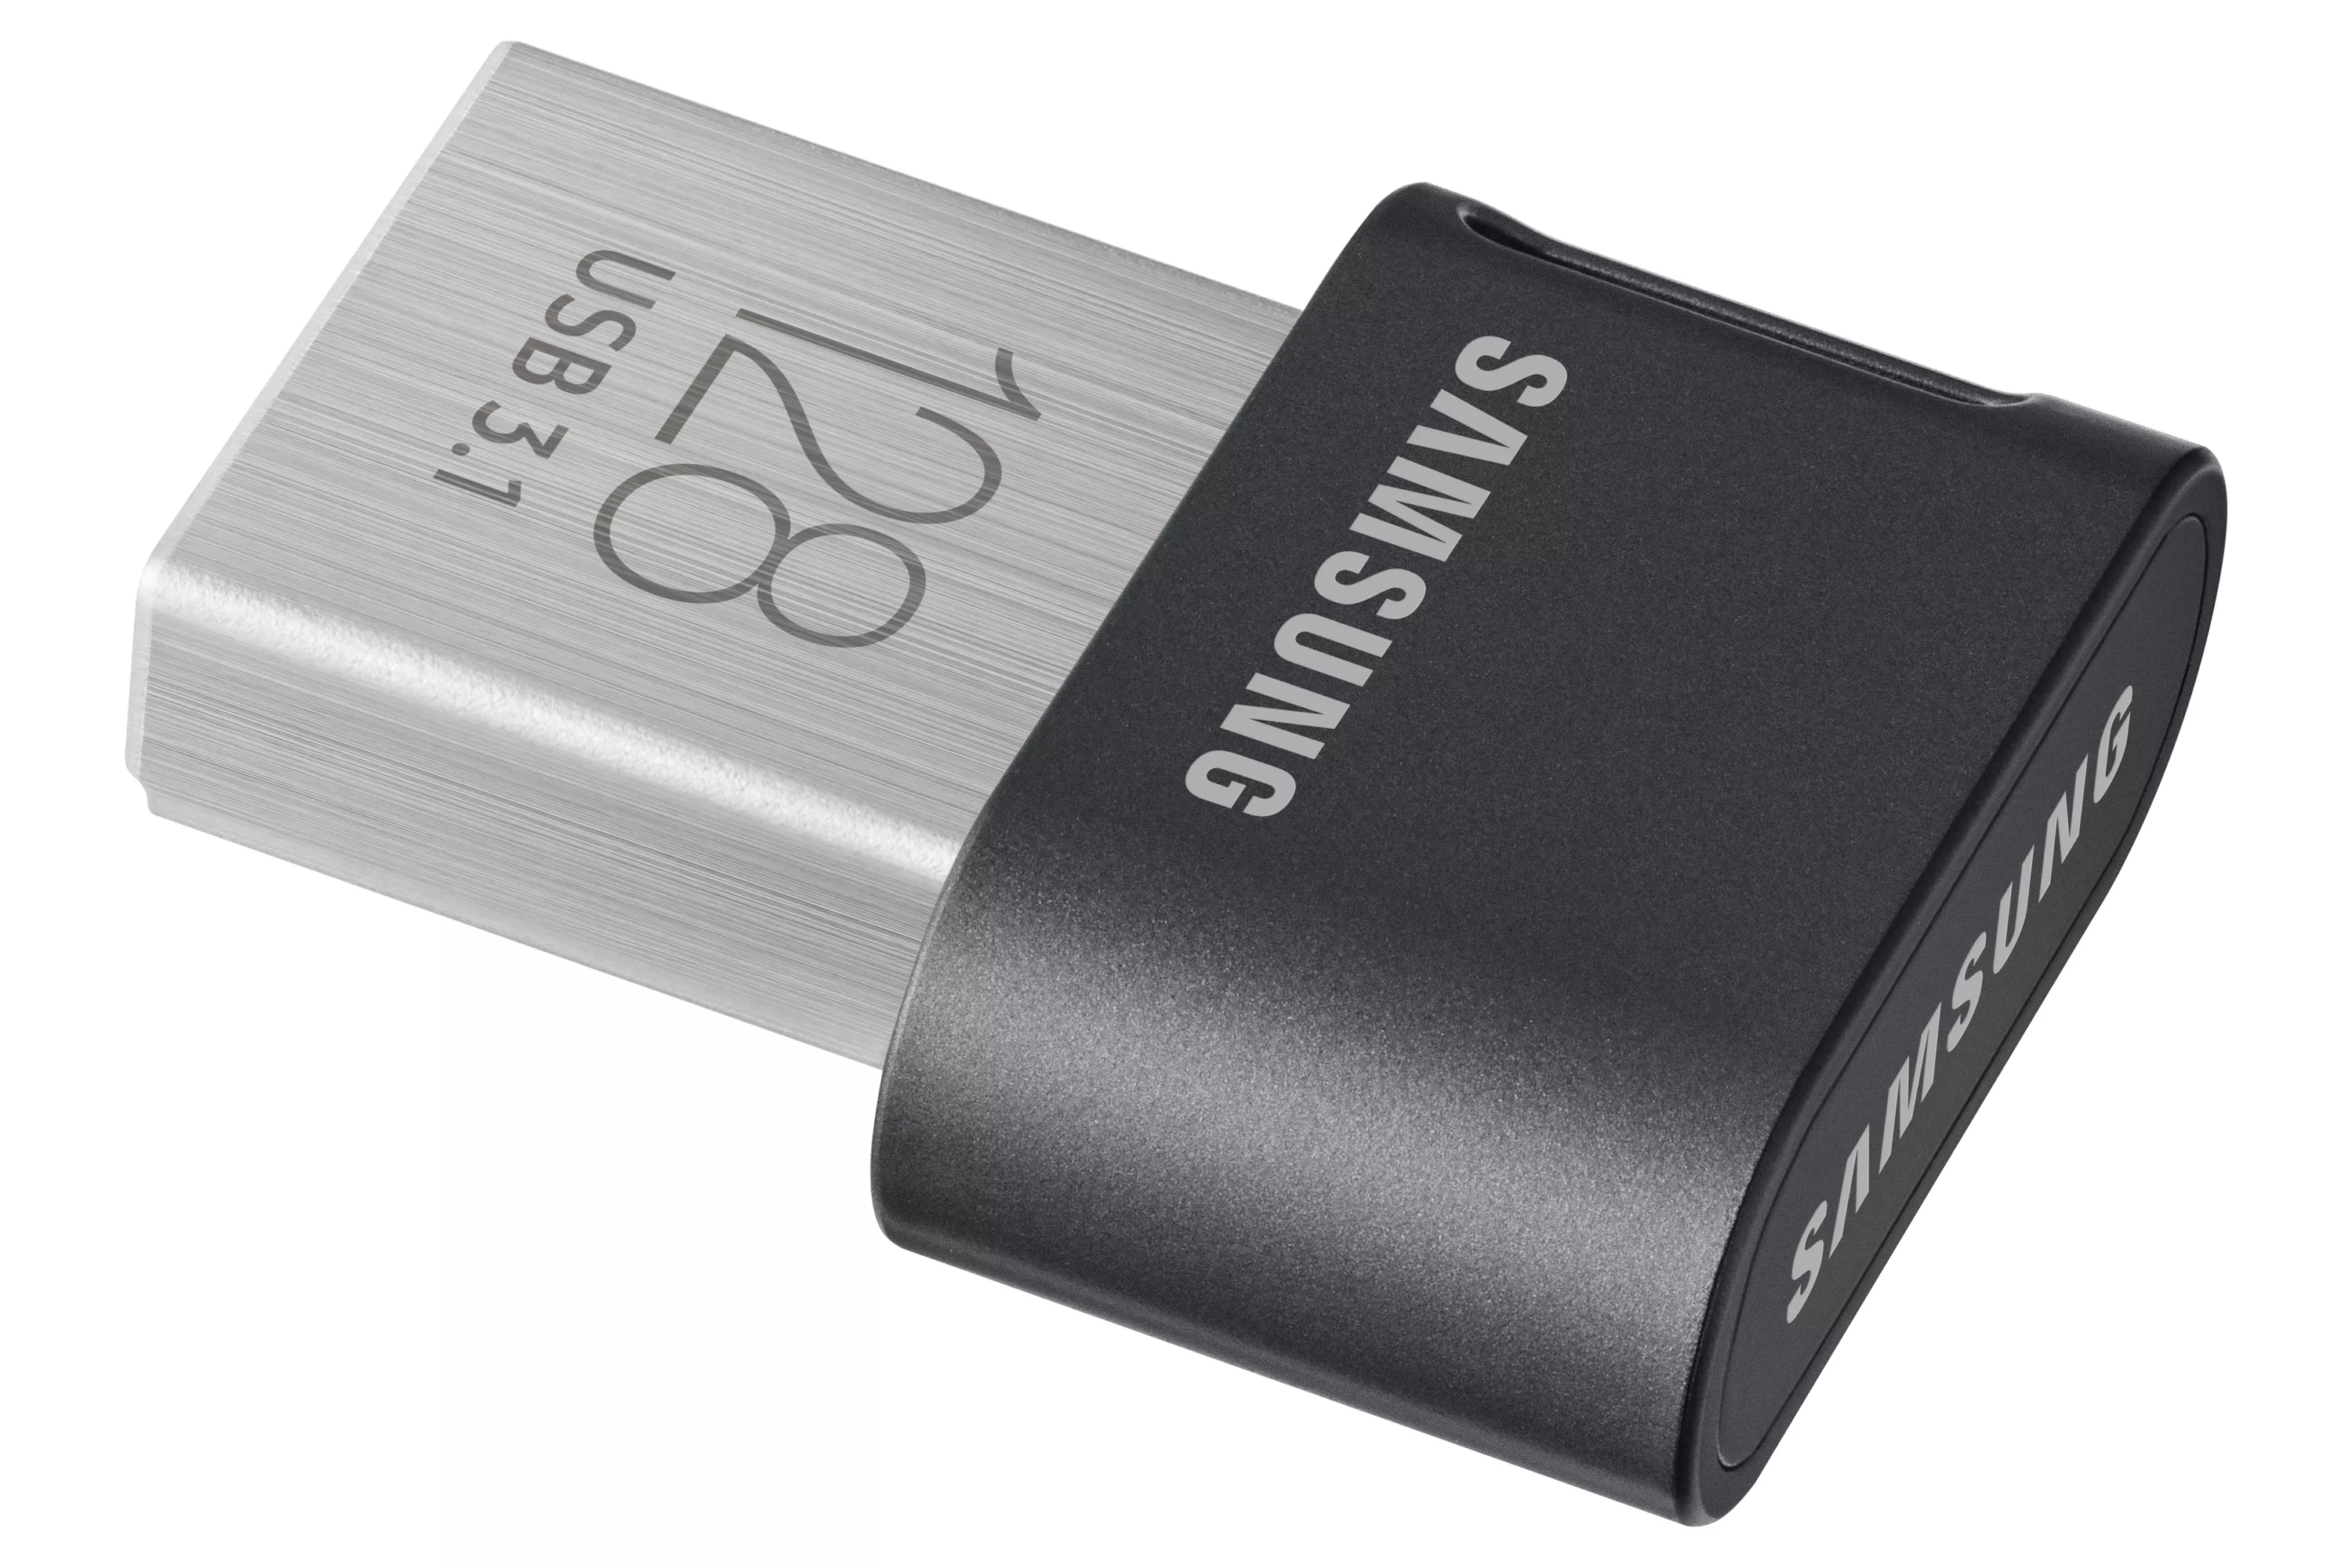 Achat SAMSUNG FIT PLUS 128Go USB 3.1 sur hello RSE - visuel 5